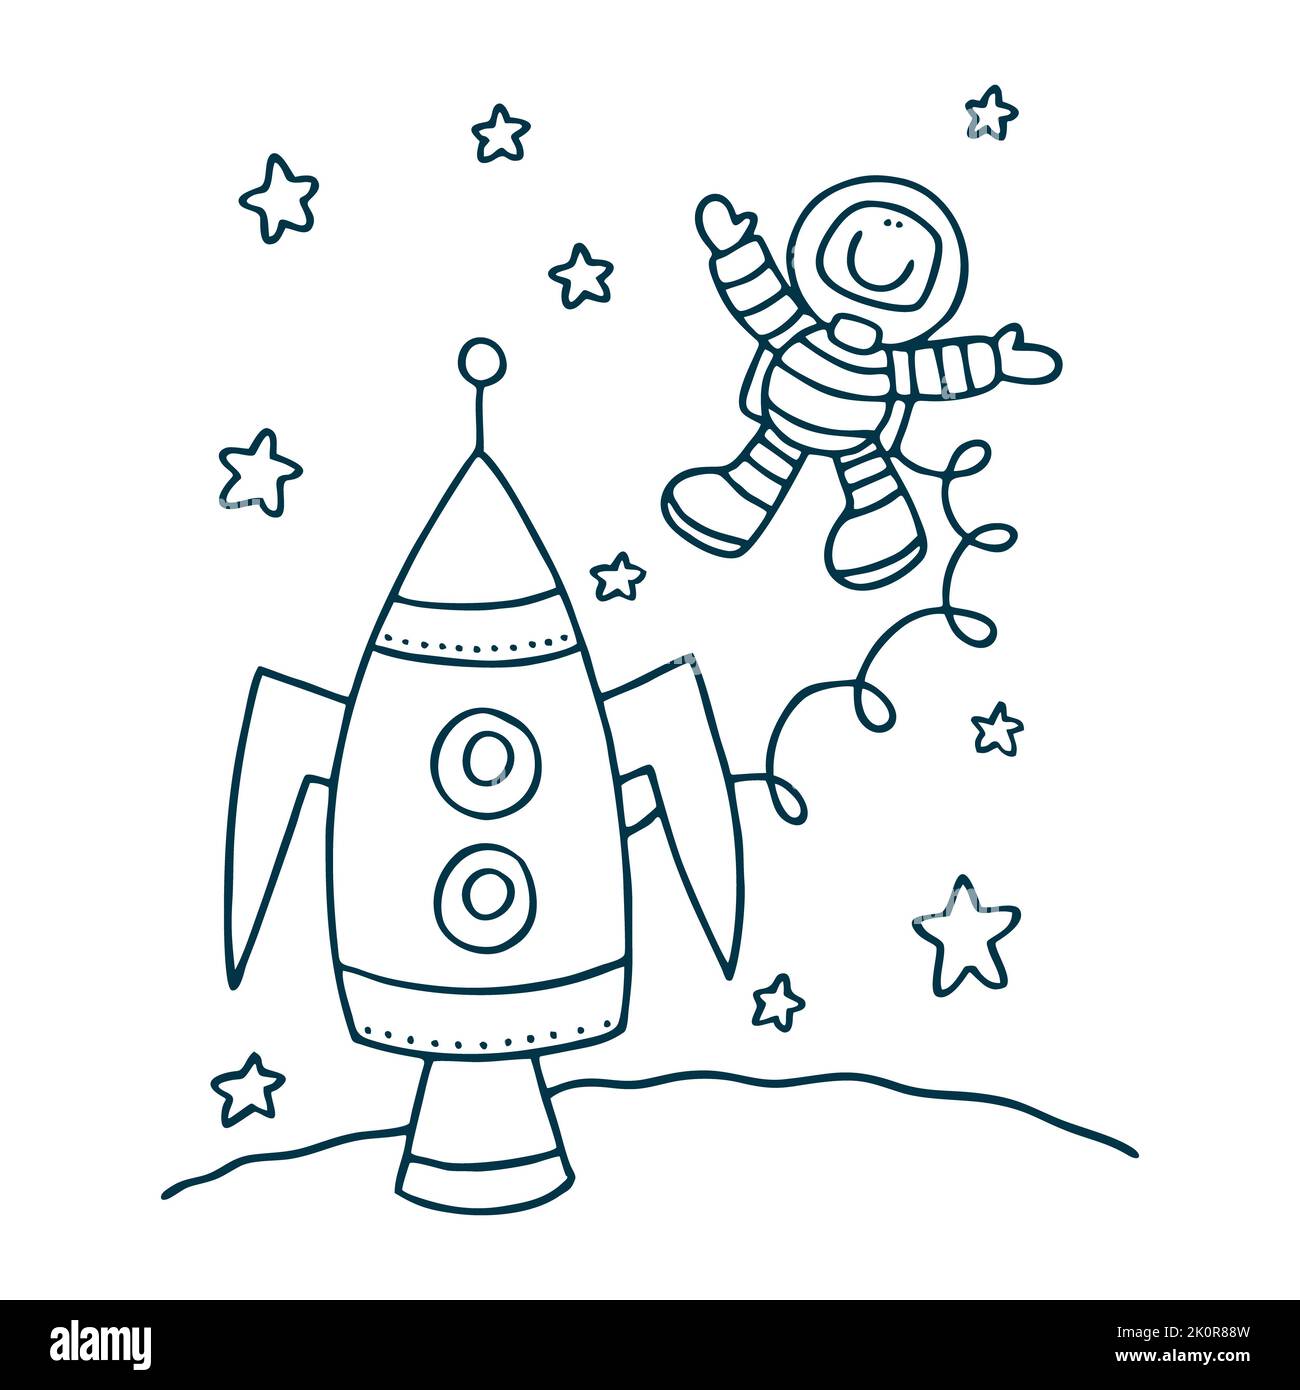 Icône astronaute isolée sur fond blanc de la collection spatiale. Icône astronaute symbole astronaute branché et moderne pour logo, web, app, UI. Astronaute Banque D'Images